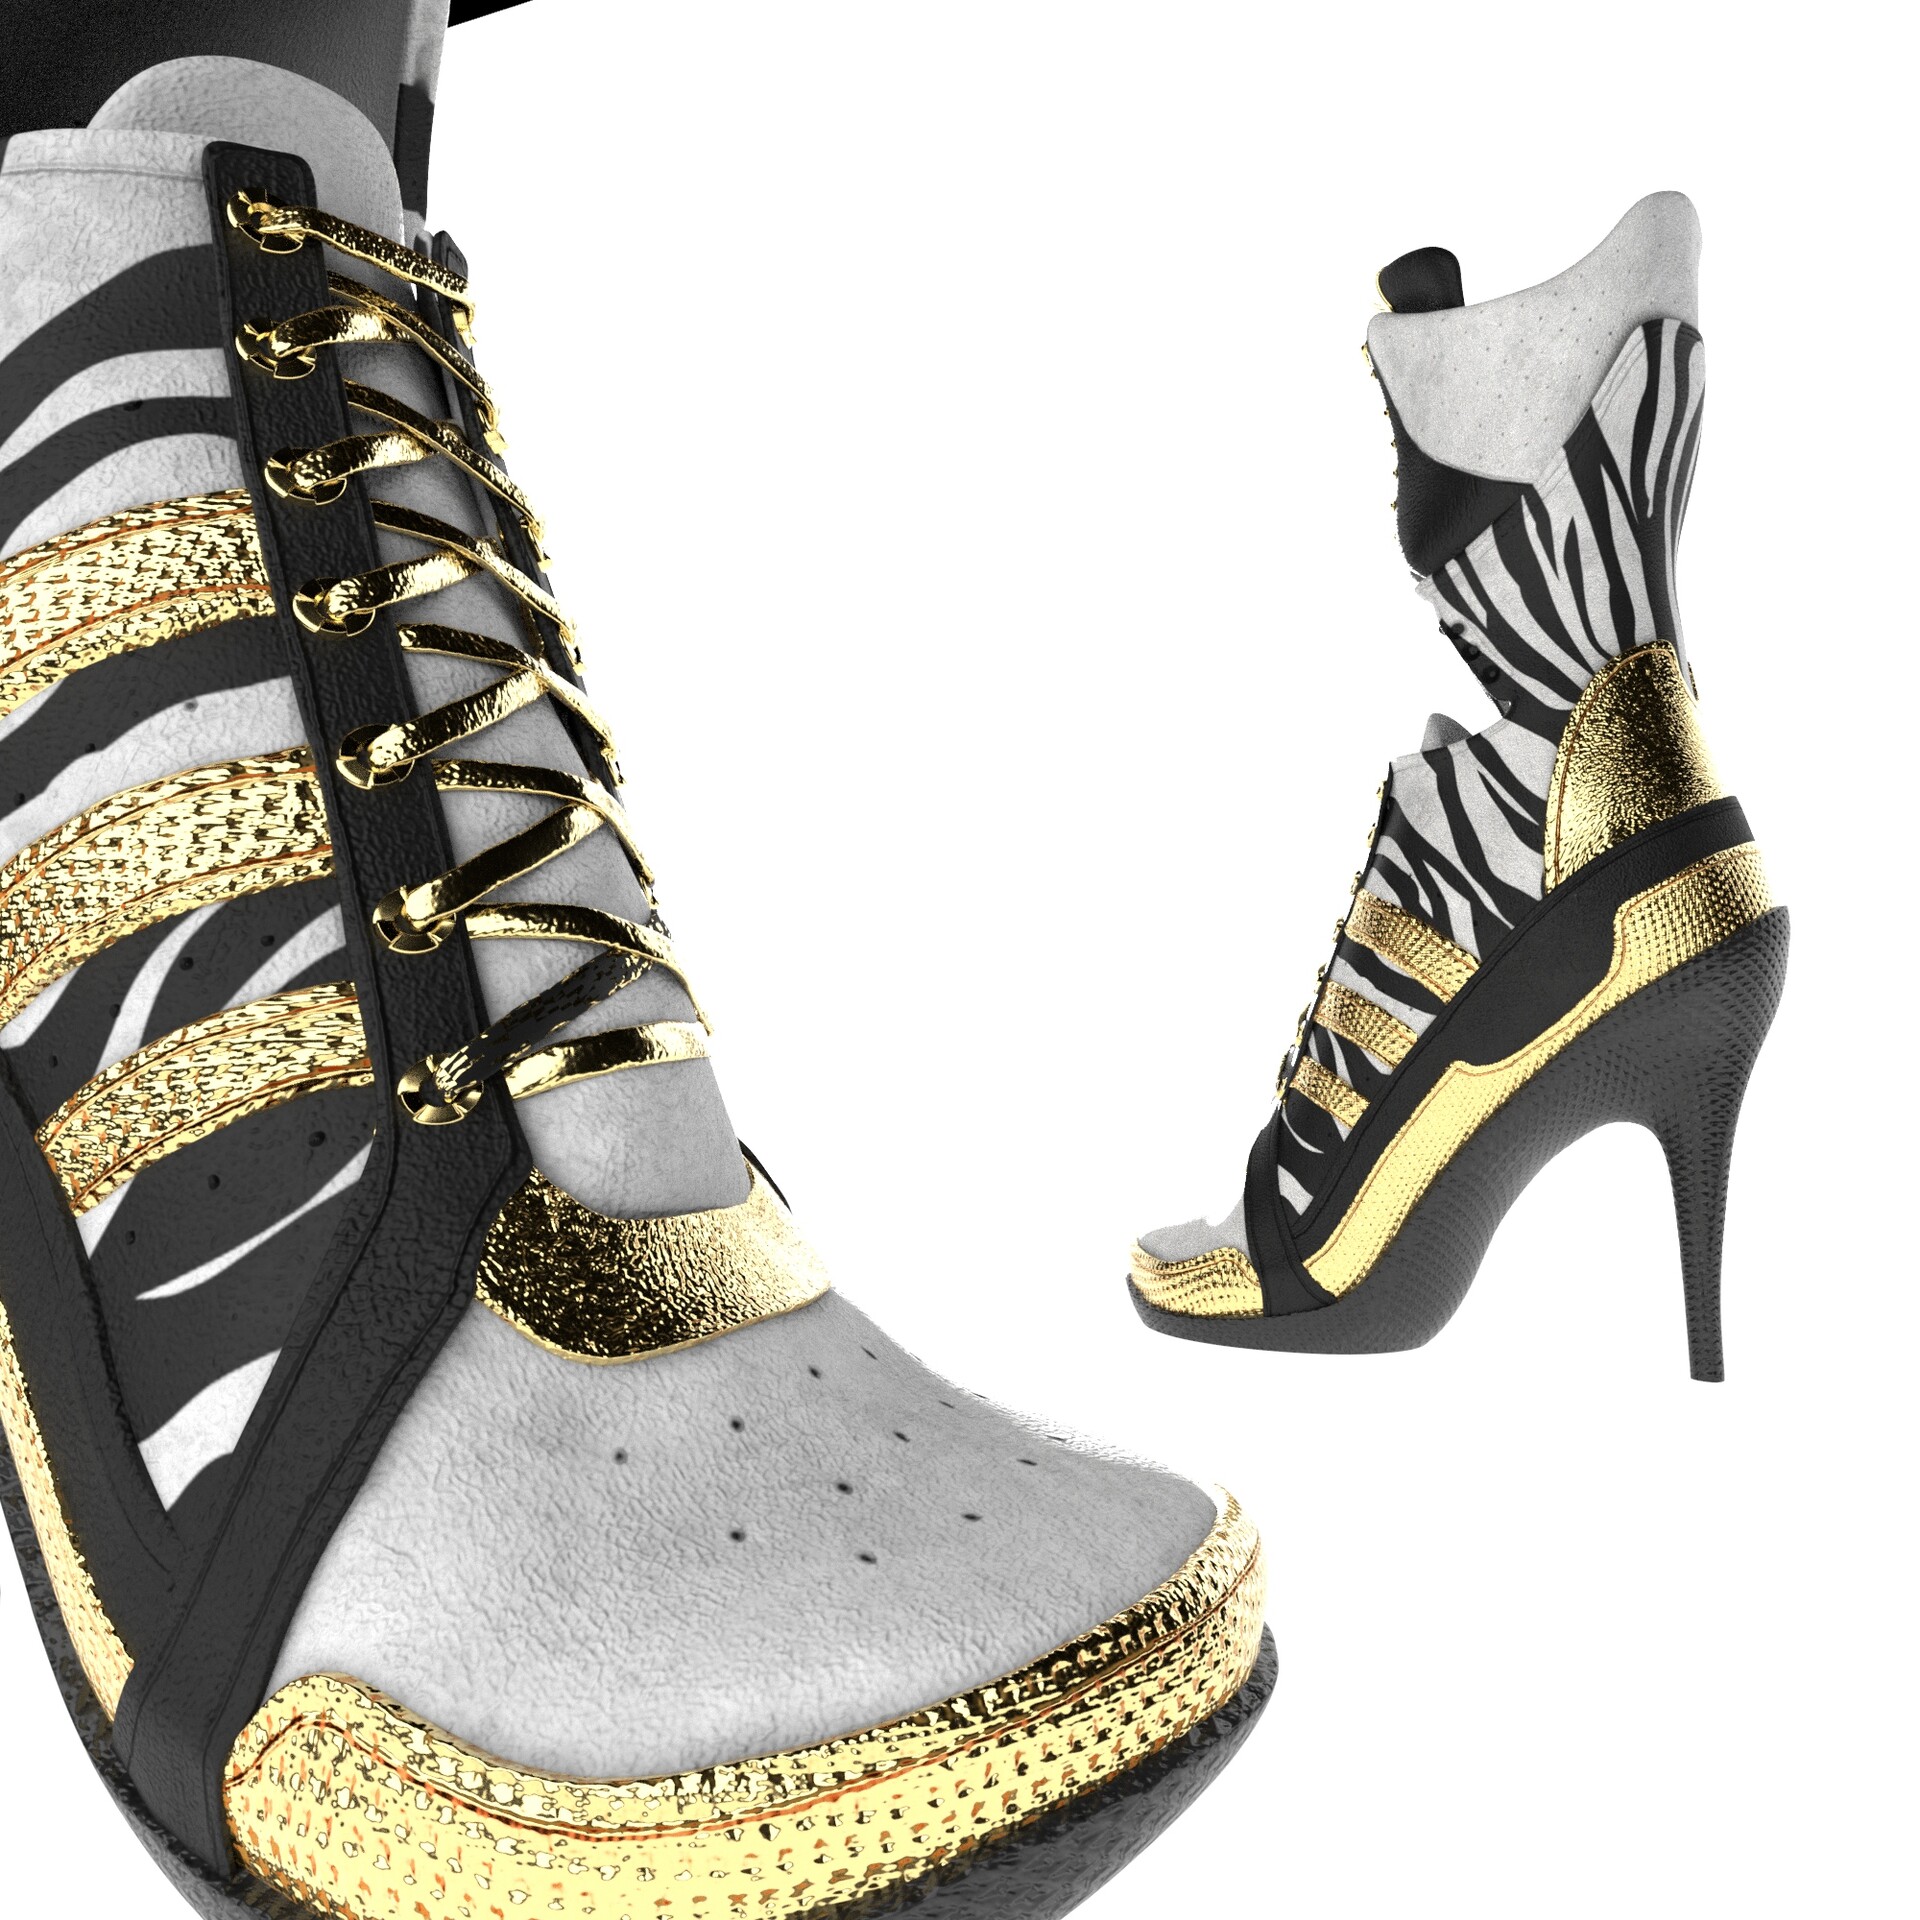 Preludio Asado homosexual ArtStation - Suicide Squad Harley Quinn inspired Adidas boots